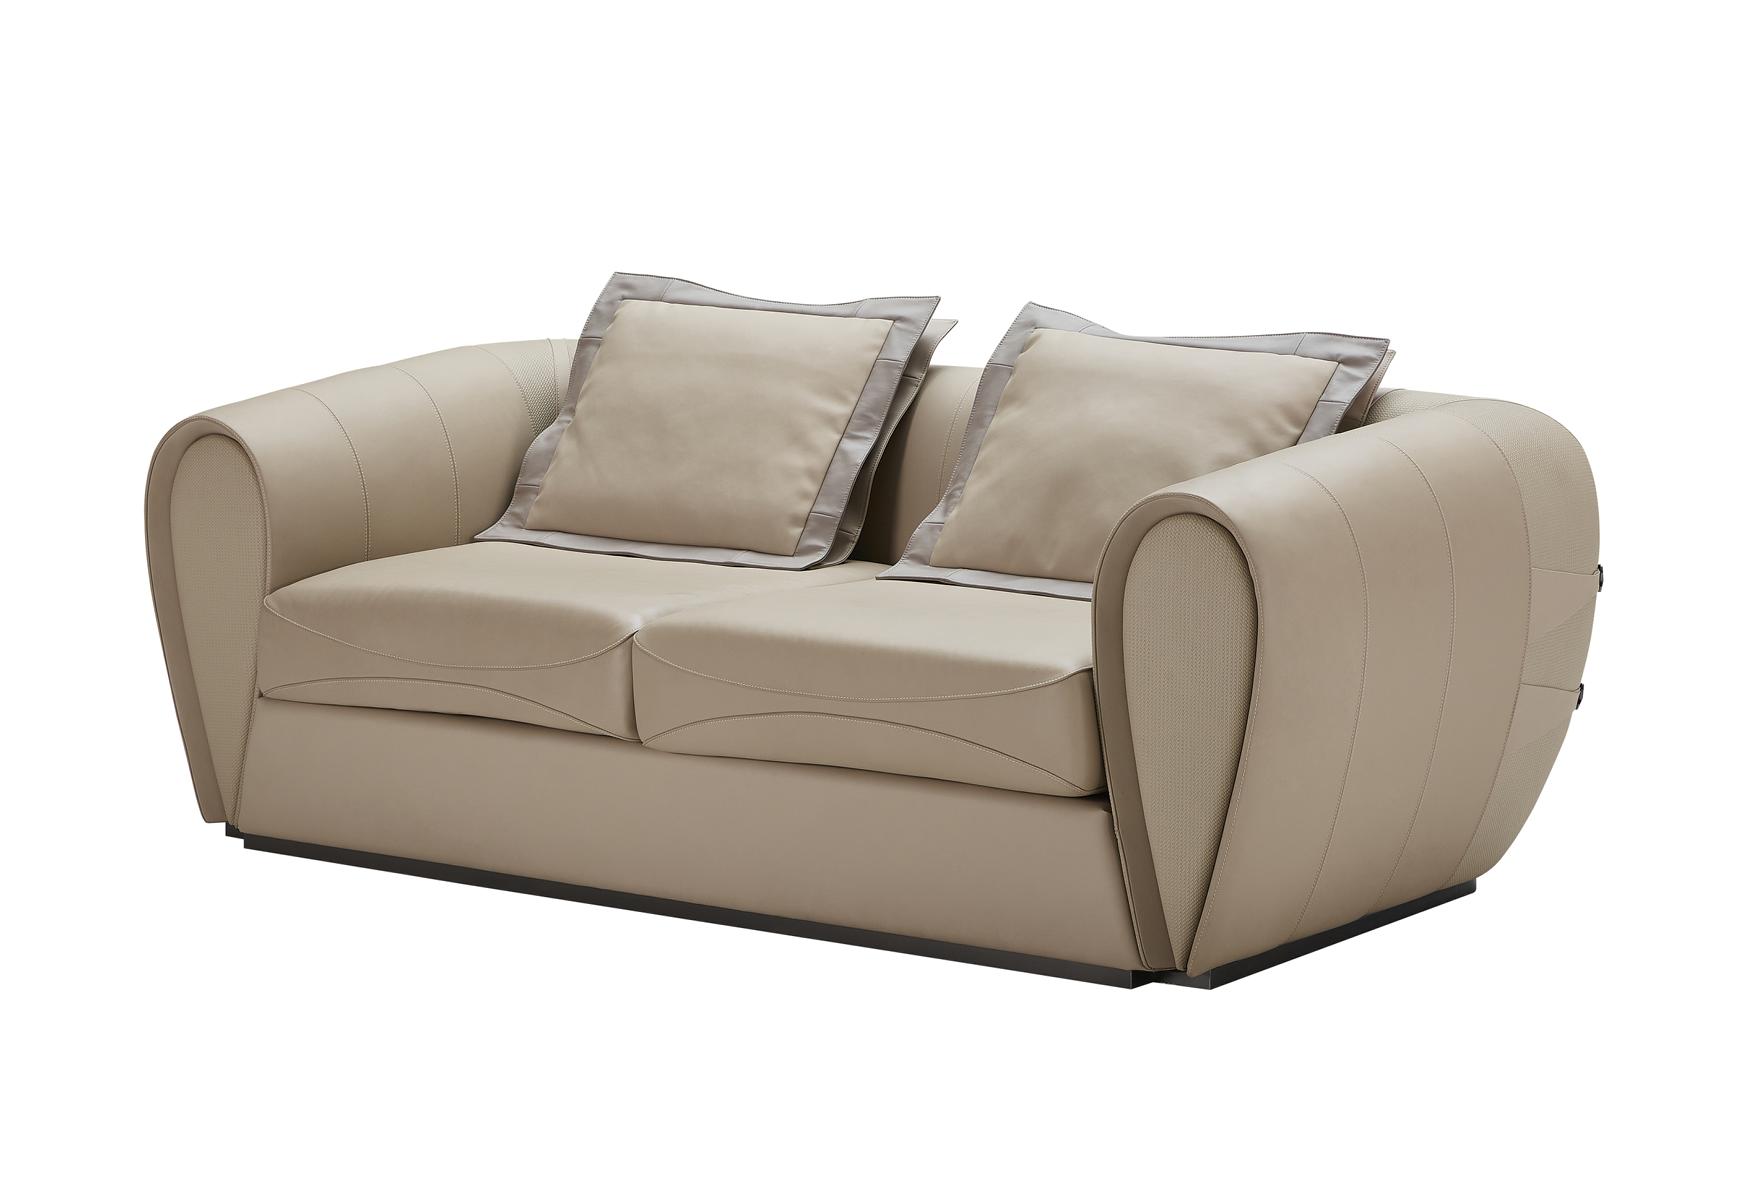 Luxus Echtleder Polster Moderne Garnitur Sofa Wohnzimmer Möbel